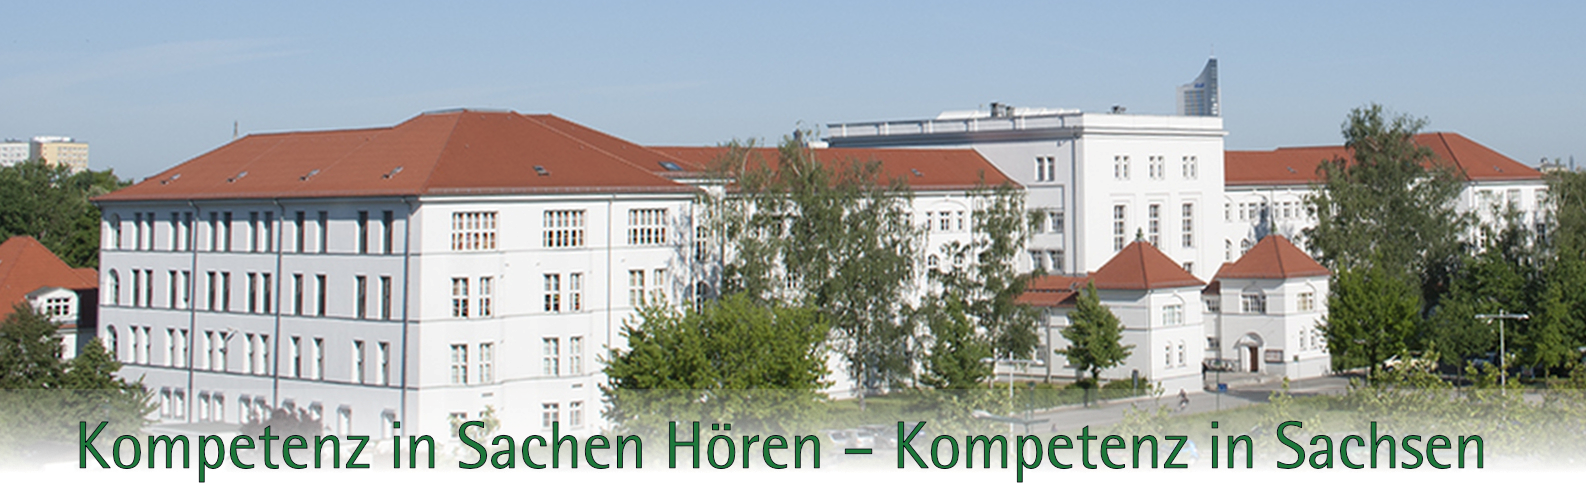 Landesschule aus der Luft fotografiert mit dem Titel »Kompetenz in Sachen Hören - Kompetenz in Sachsen«